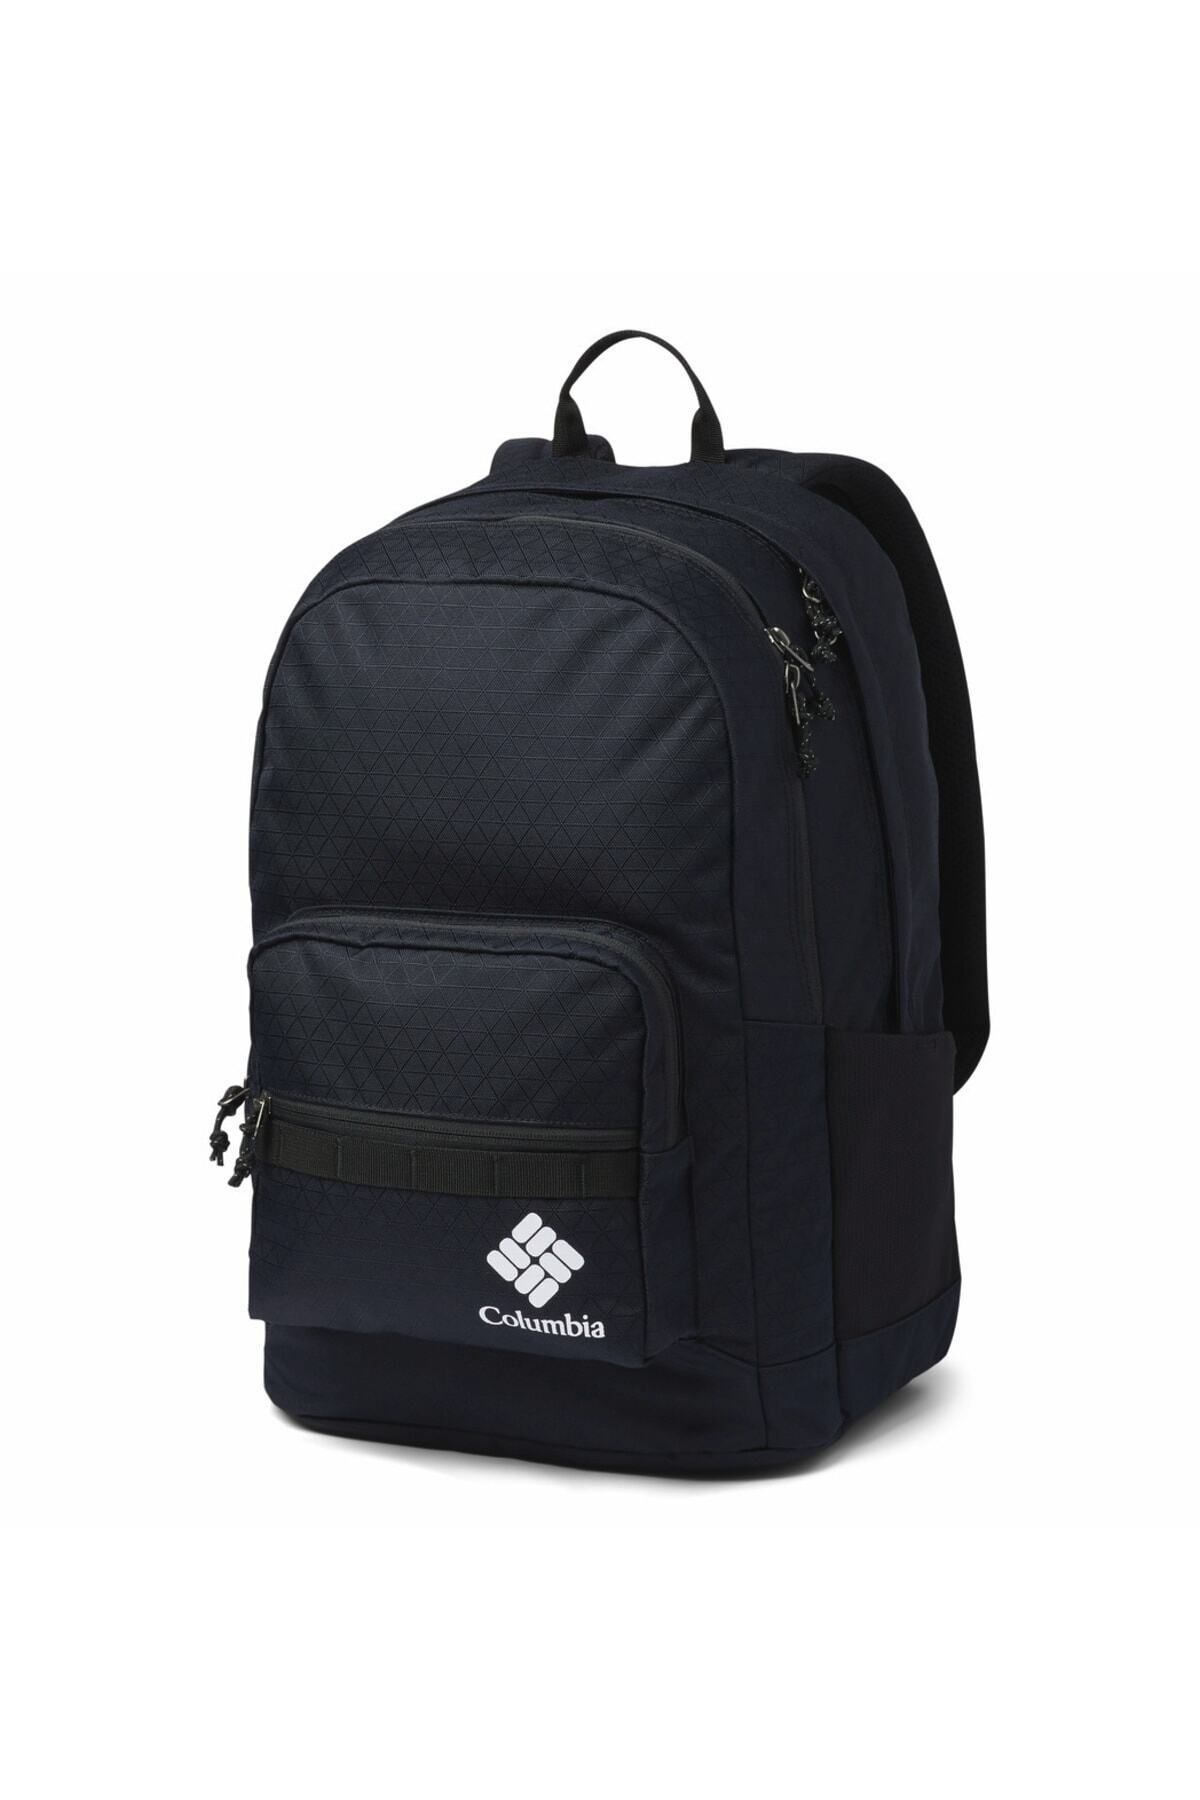 Columbia Uu0087 Zıgzag 30l Backpack